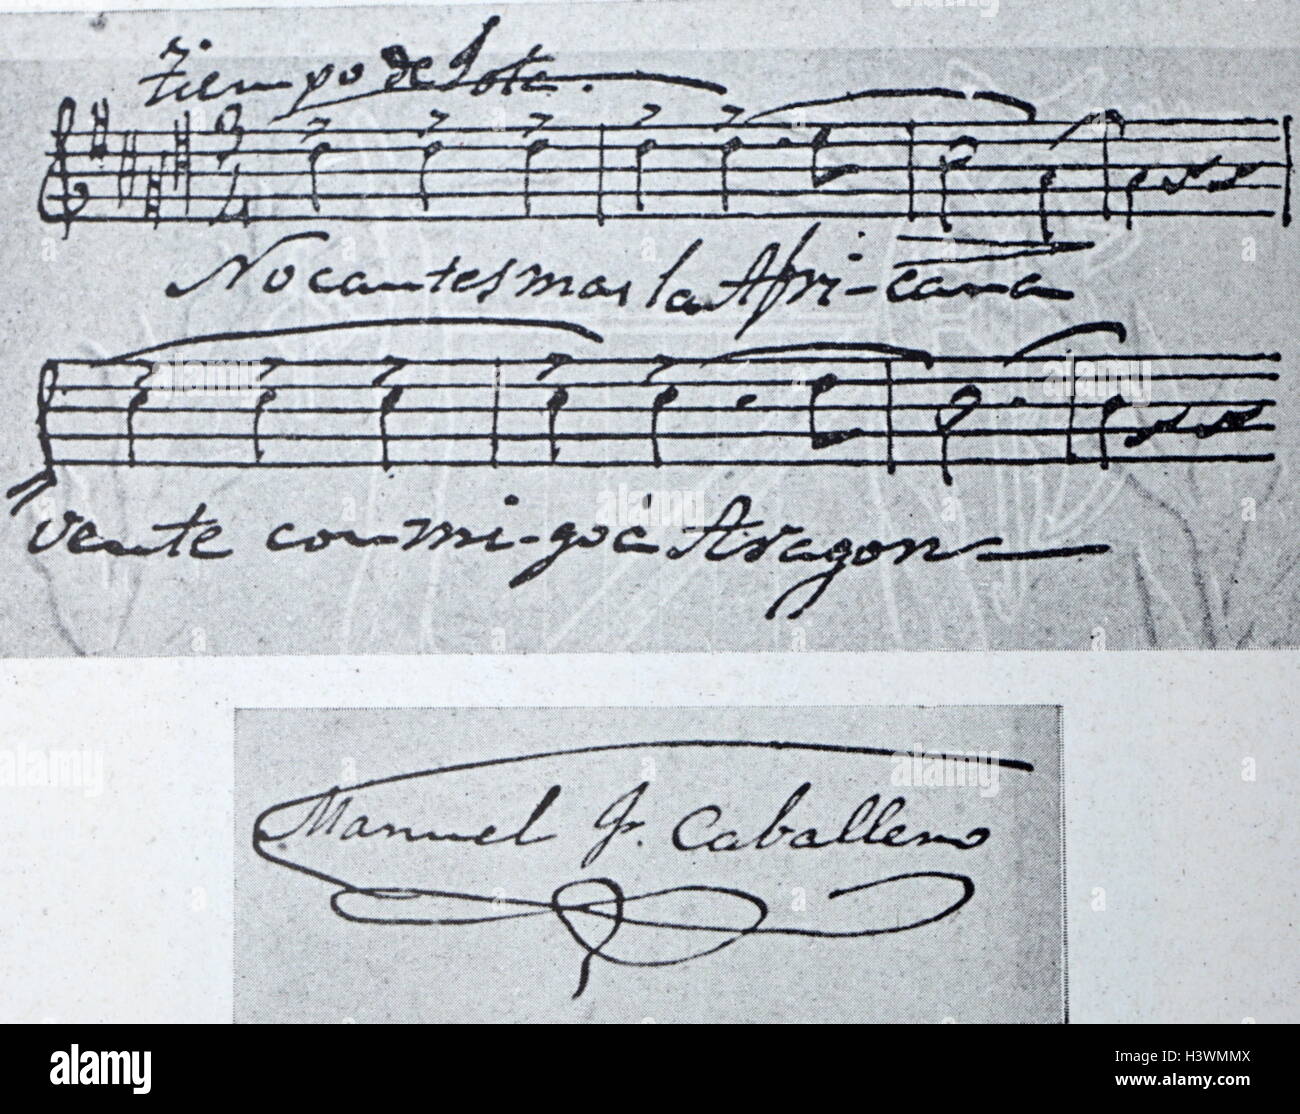 Noten und Autogramm von Manuel Fernández Caballero (1835-1906), ein spanischer Komponist. Vom 19. Jahrhundert Stockfoto